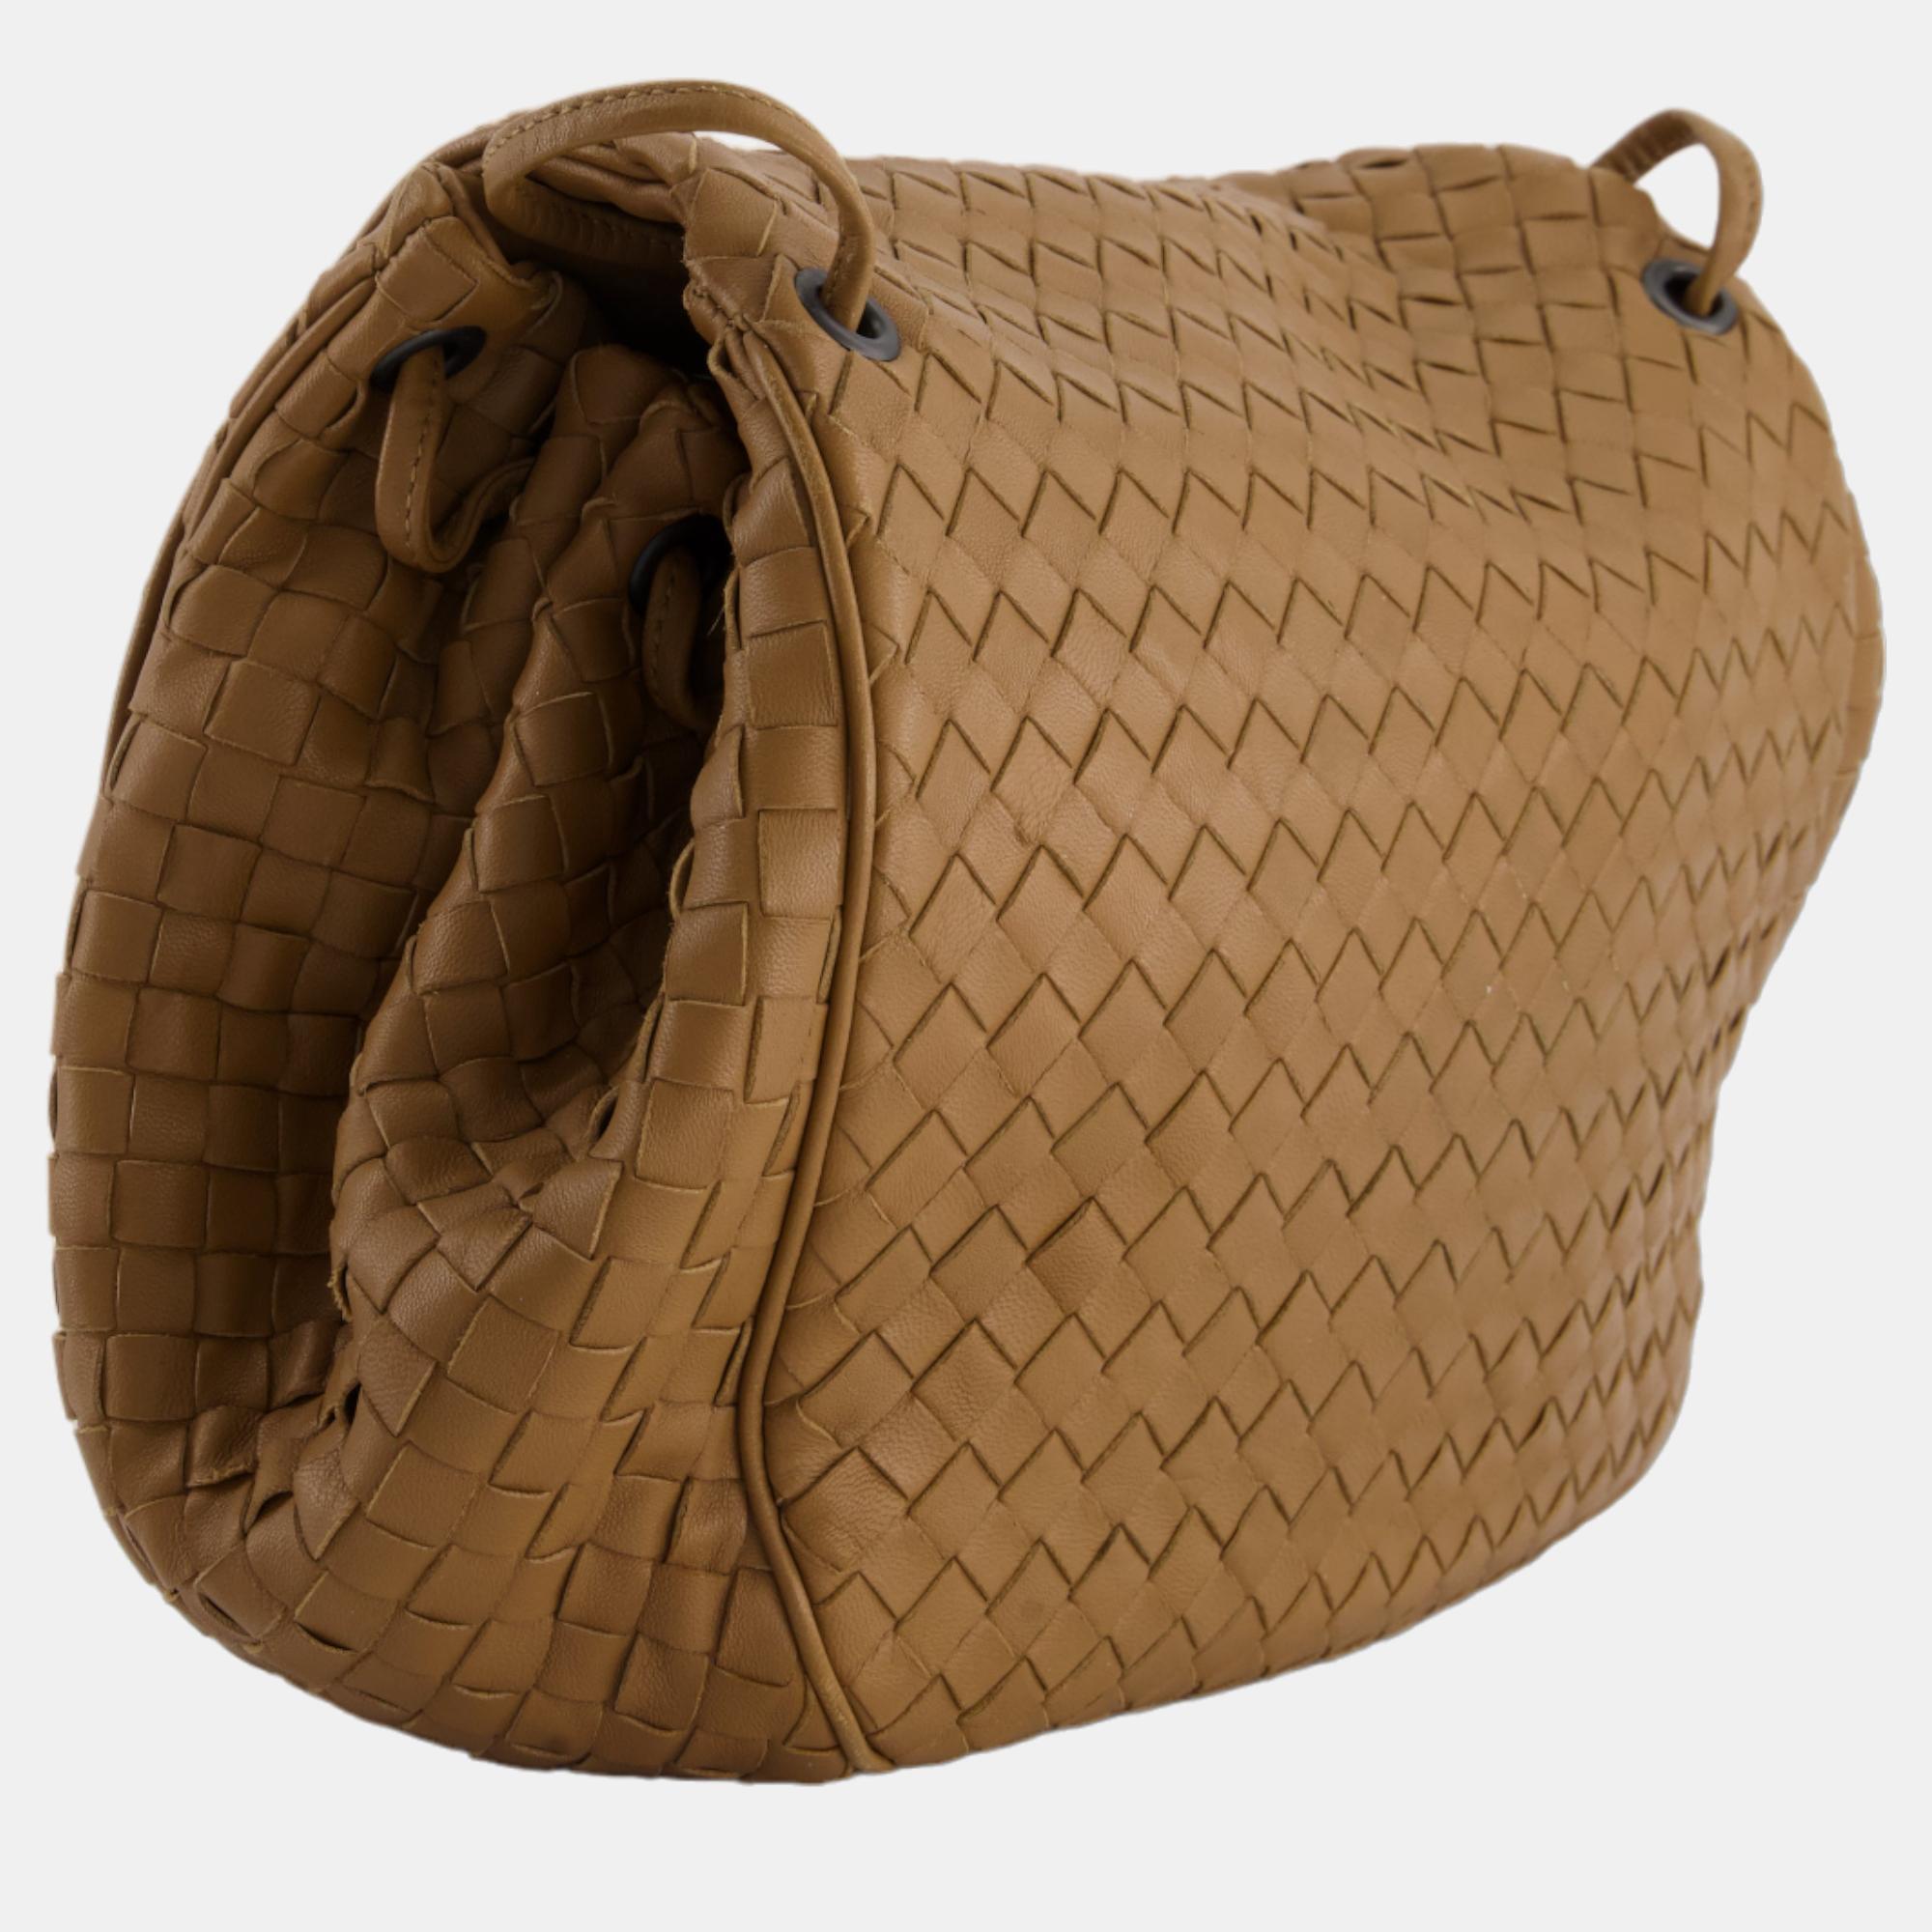 Bottega Brown Leather Intrecciato Shoulder Bag With Black Hardware